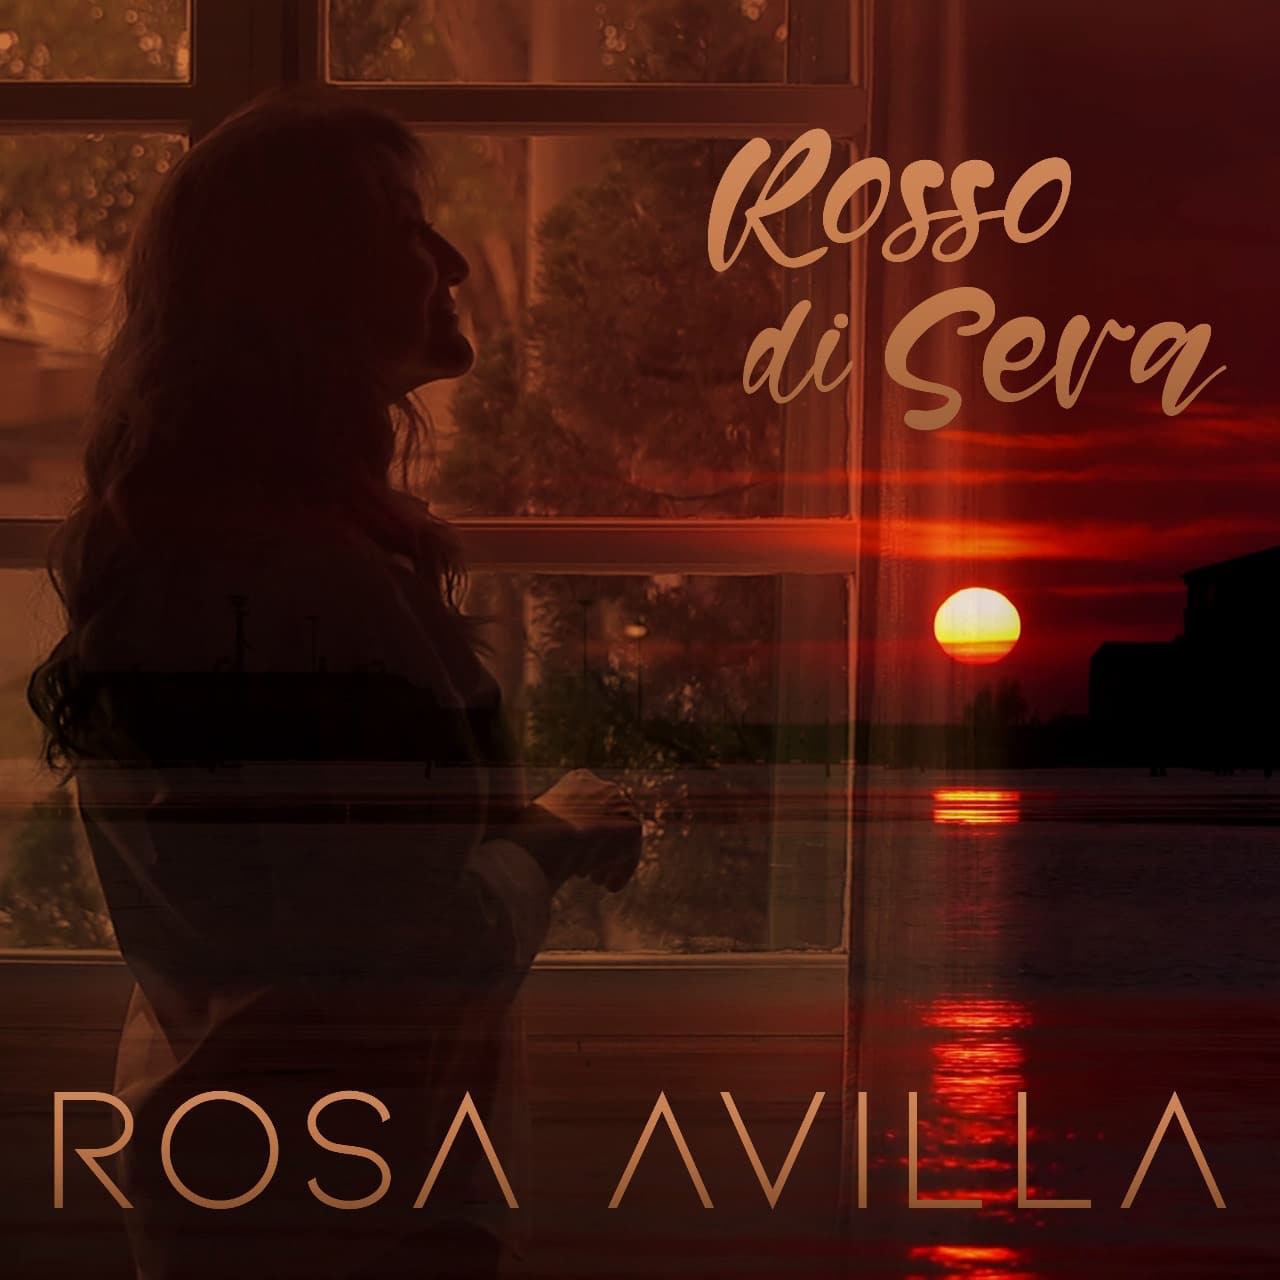 revistaprosaversoearte.com - Rosa Avilla cantora ítalo-brasileira lança single 'Rosso Di Sera'